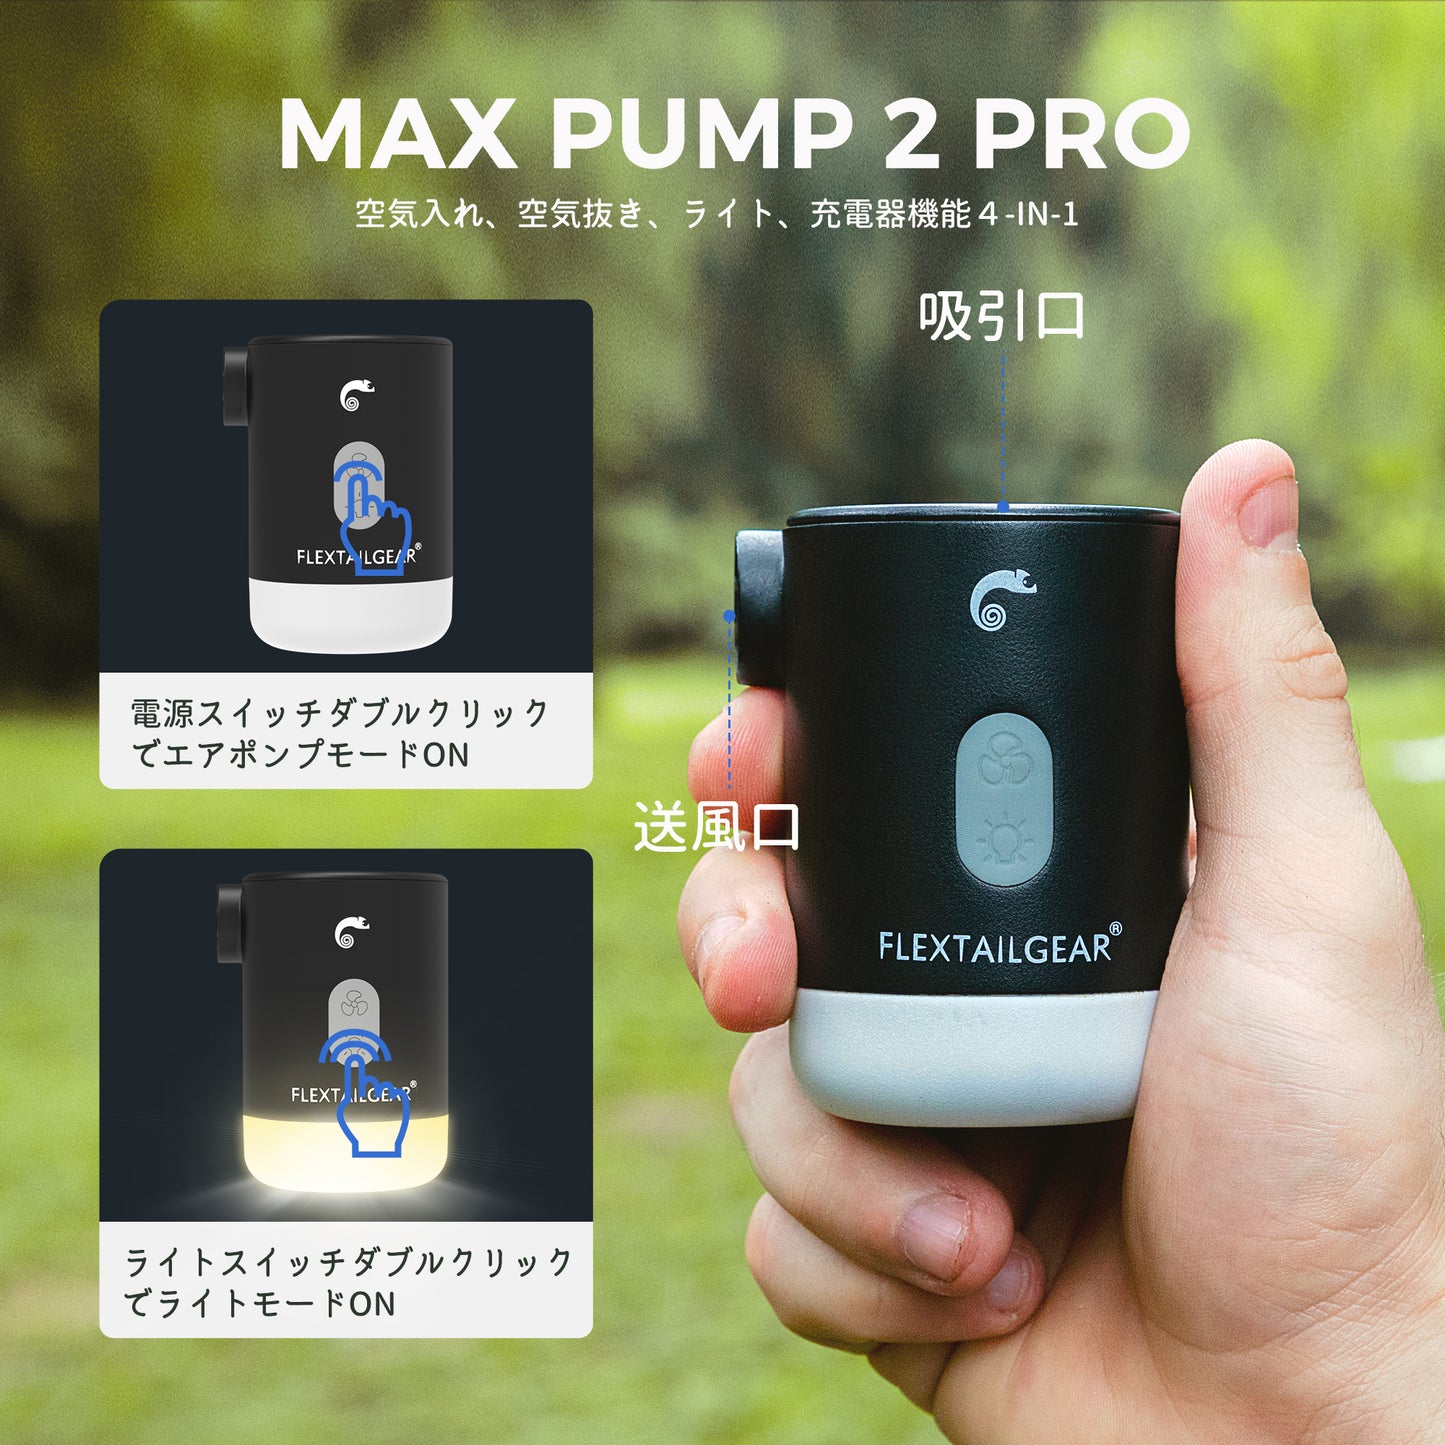 MAX PUMP 2 PRO-3600mAh携帯充電器にもなる4-IN-1エアーポンプ